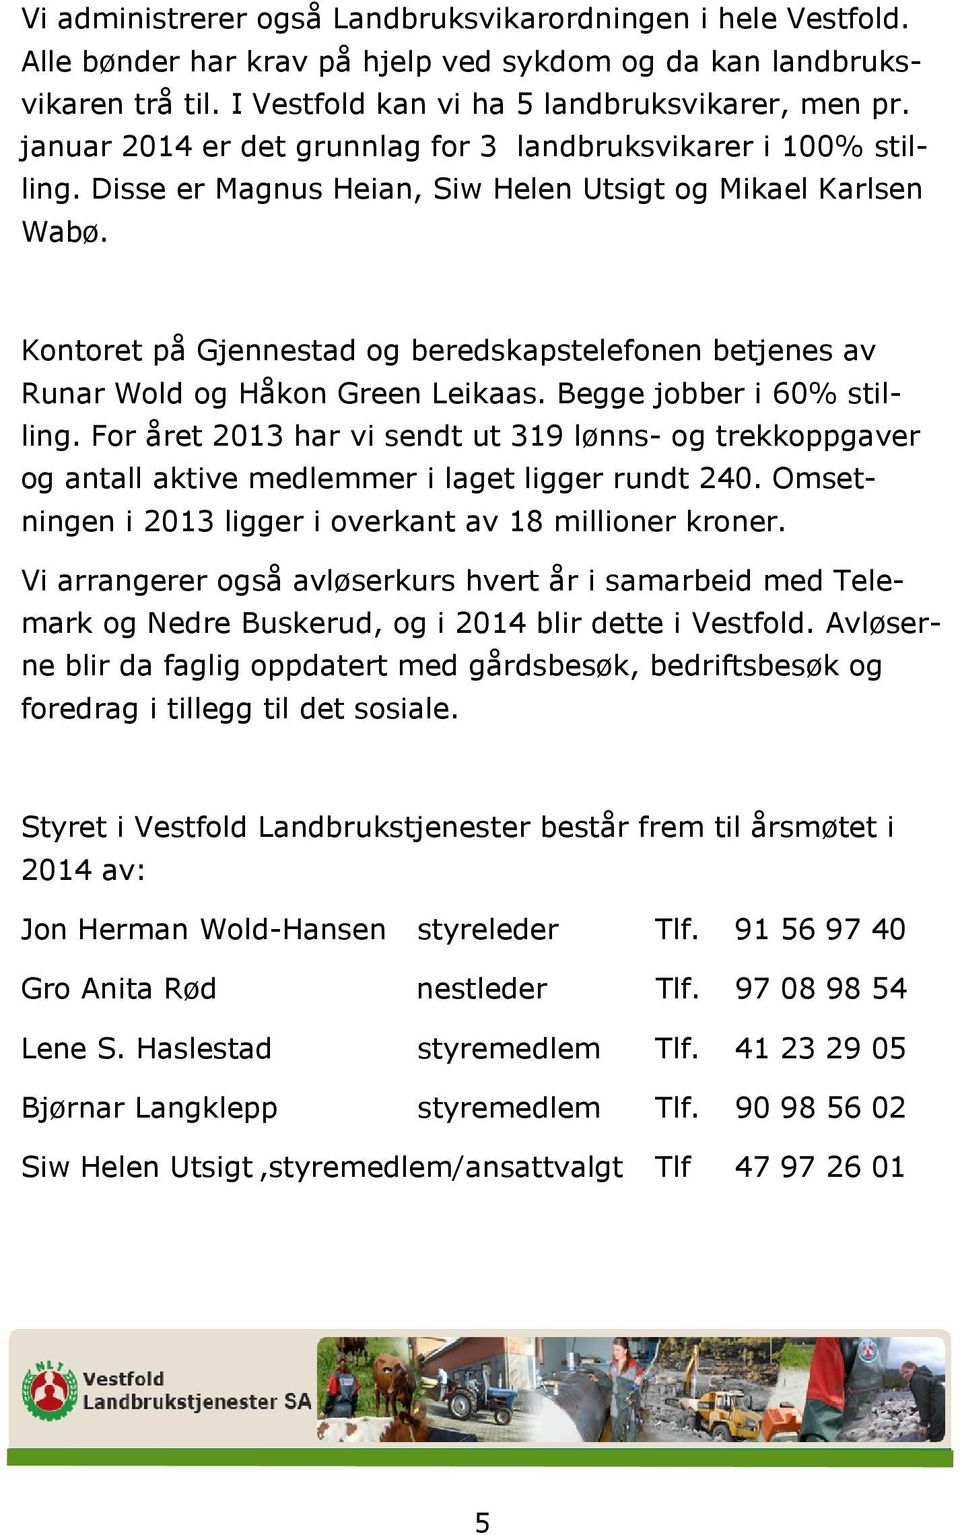 Kontoret på Gjennestad og beredskapstelefonen betjenes av Runar Wold og Håkon Green Leikaas. Begge jobber i 60% stilling.